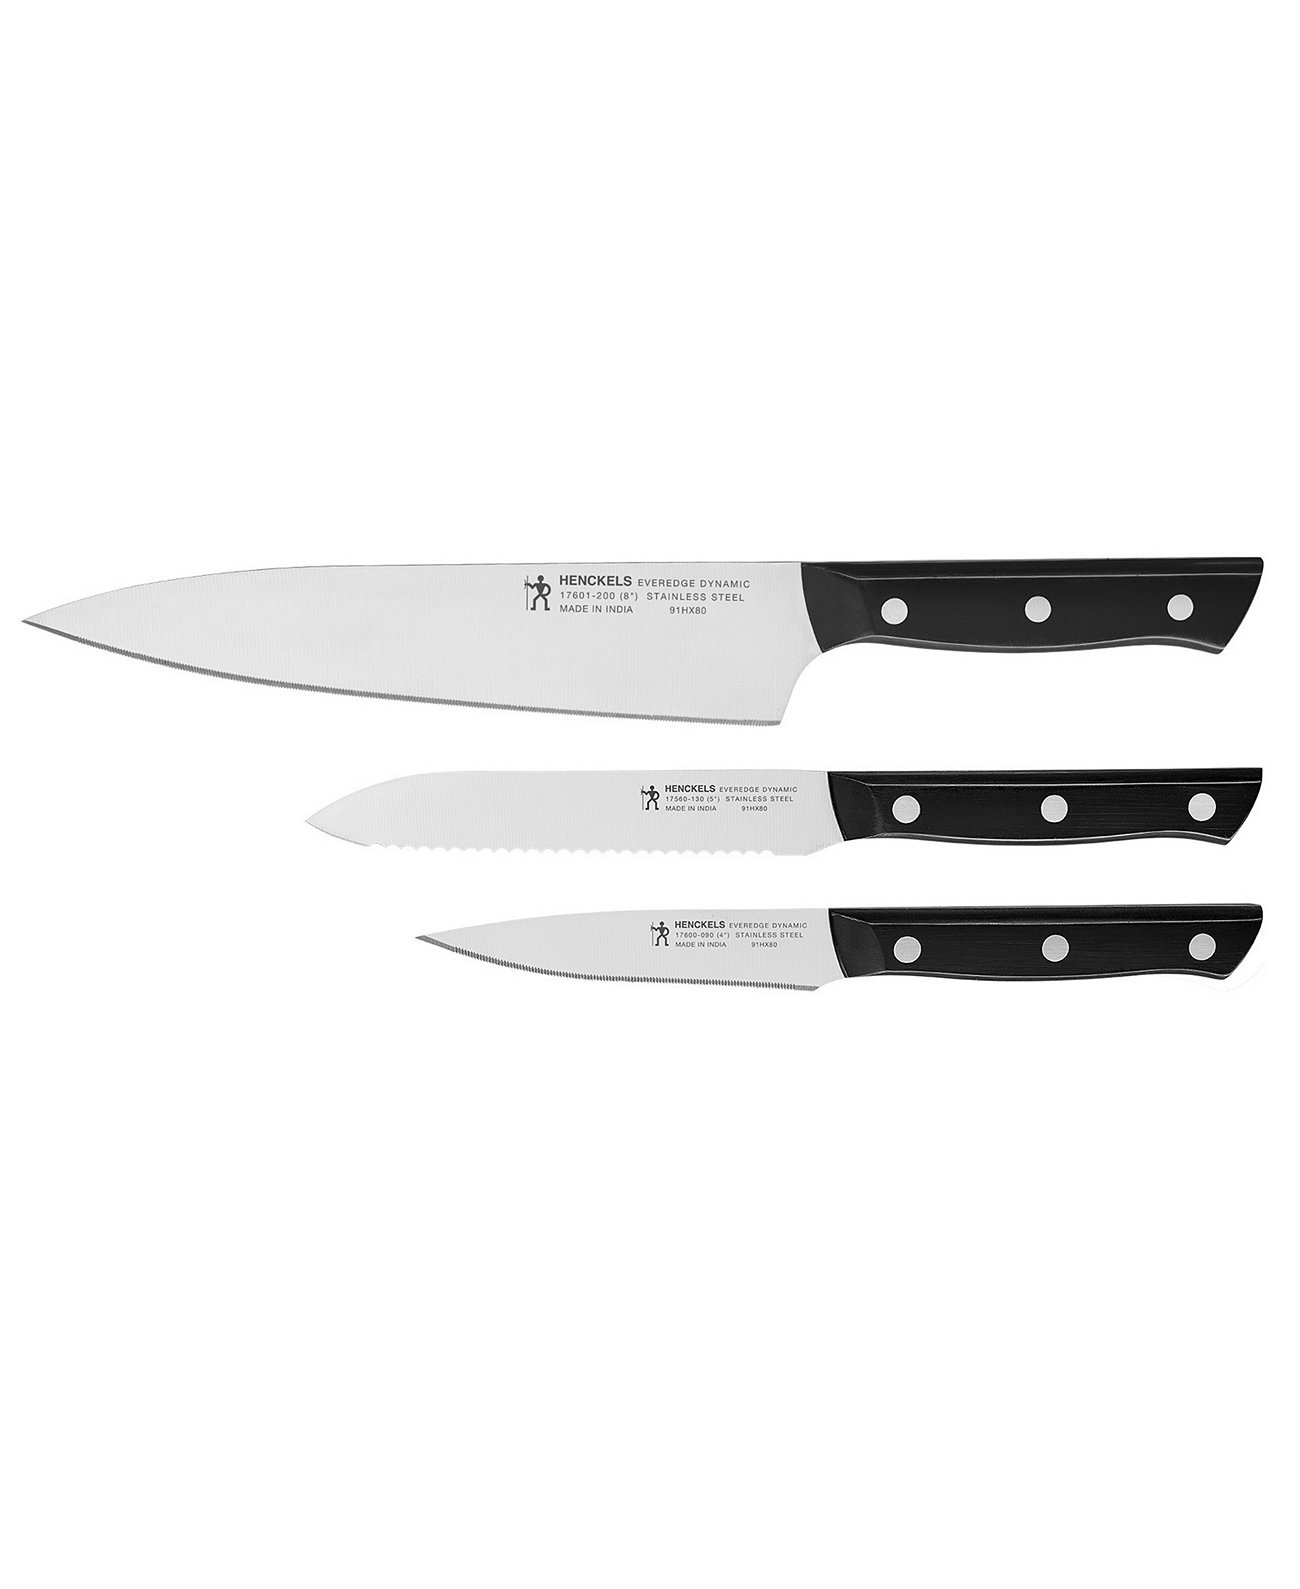 Начальный набор ножей Everedge Dynamic из 3 предметов J.A. Henckels